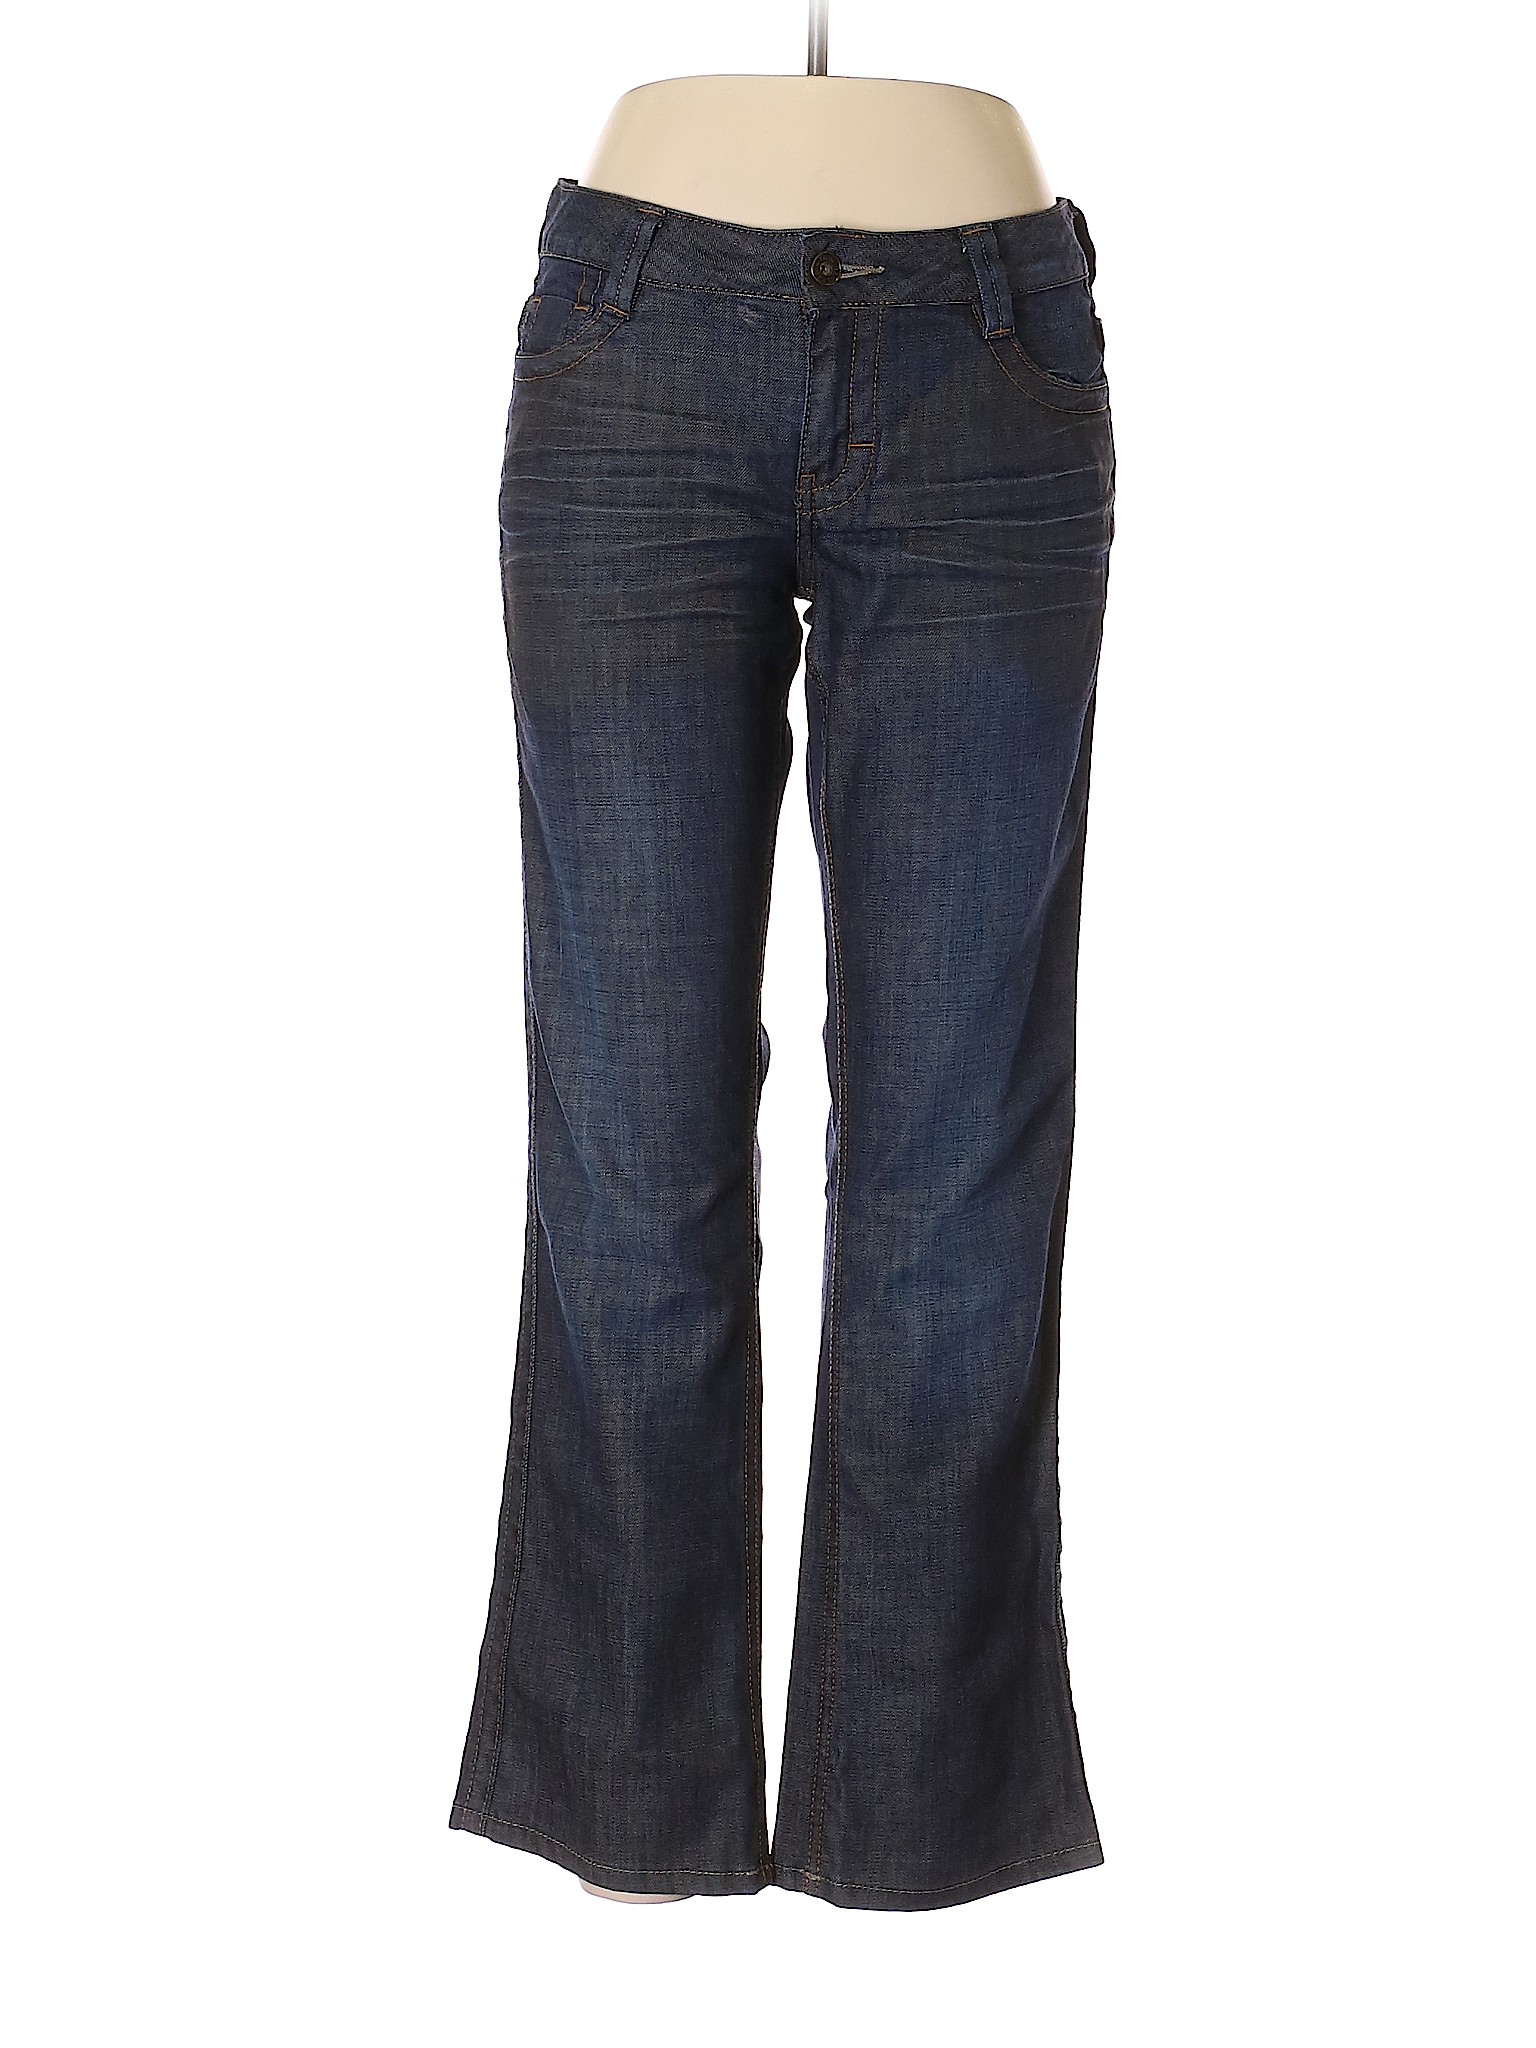 CALVIN KLEIN JEANS Women Blue Jeans 10 | eBay